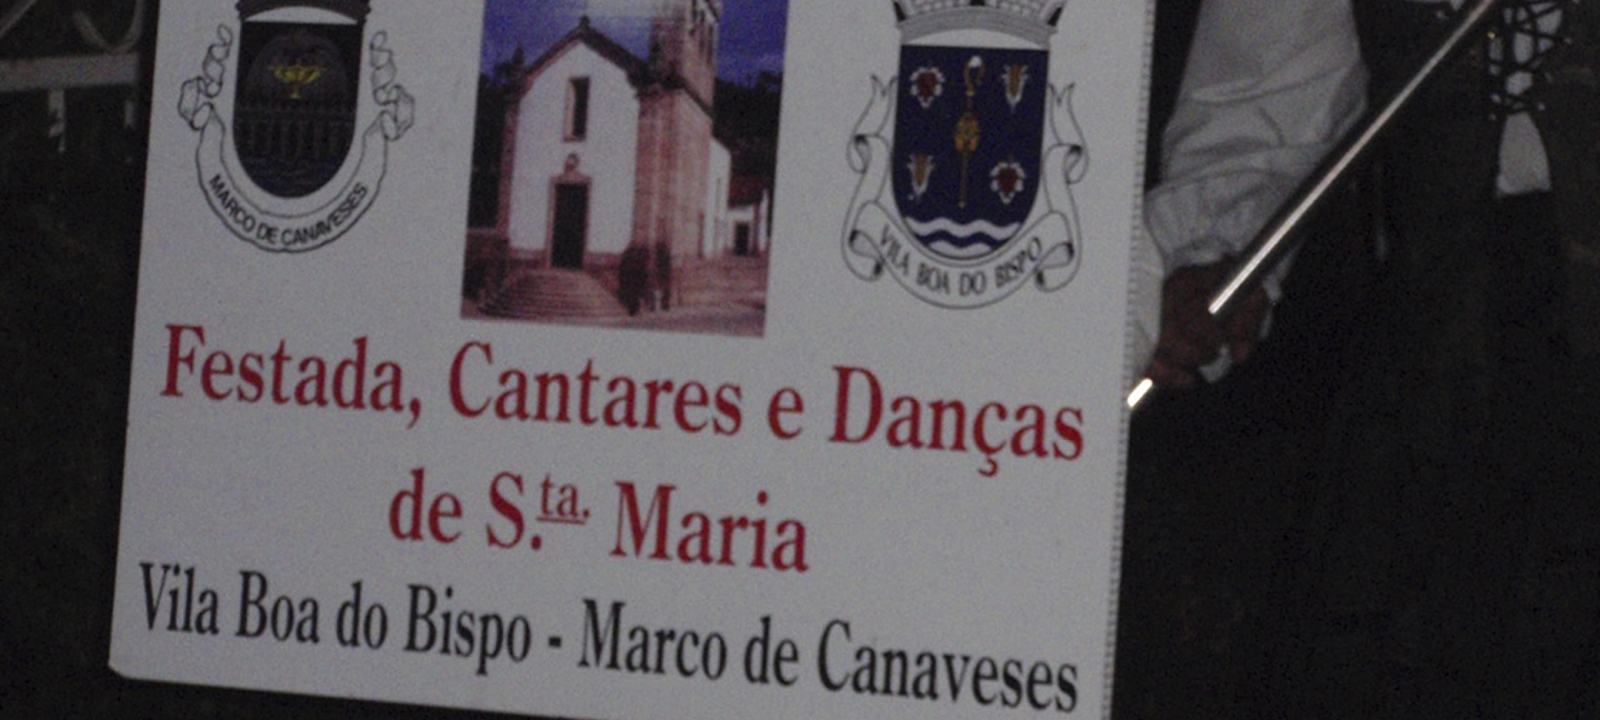 Vila Boa do Bispo - Marco de Canaveses